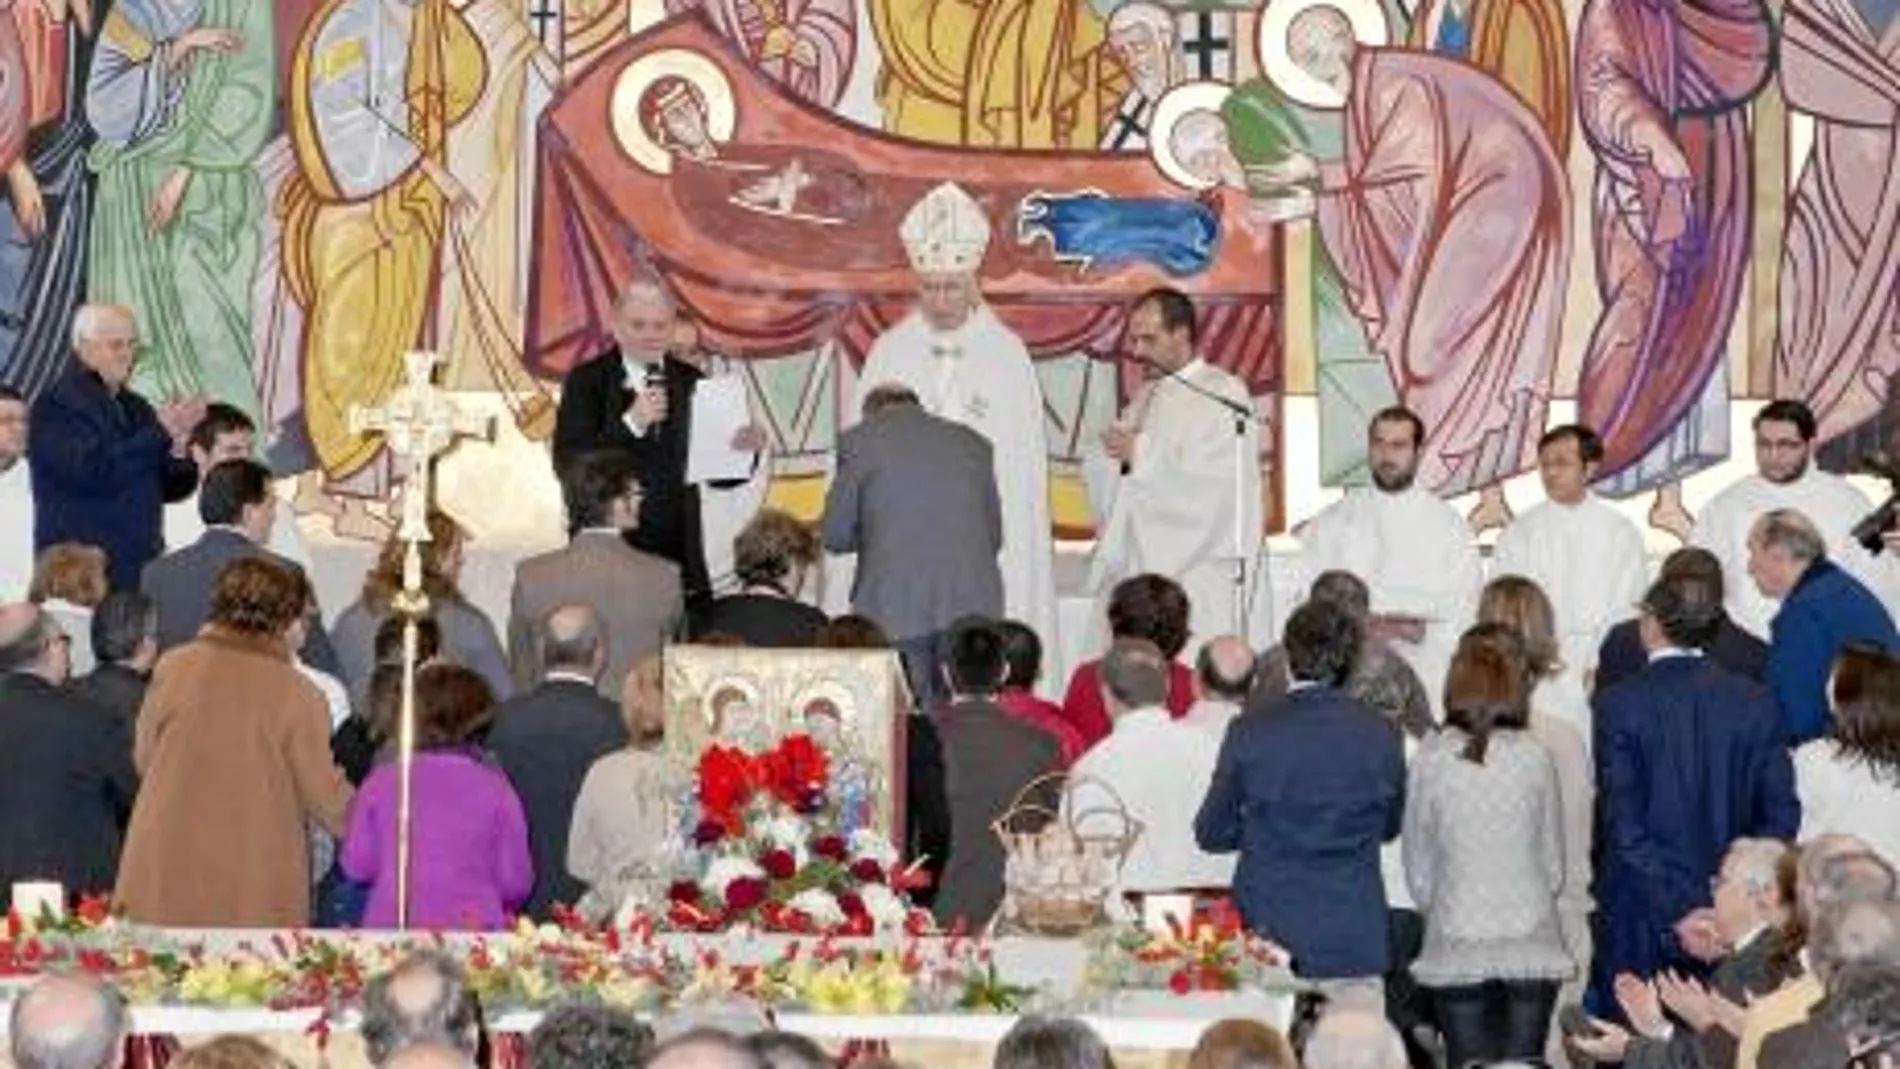 El cardenal arzobispo de Madrid, Rouco Varela, regaló la cruz misionera a las comunidades durante el envío